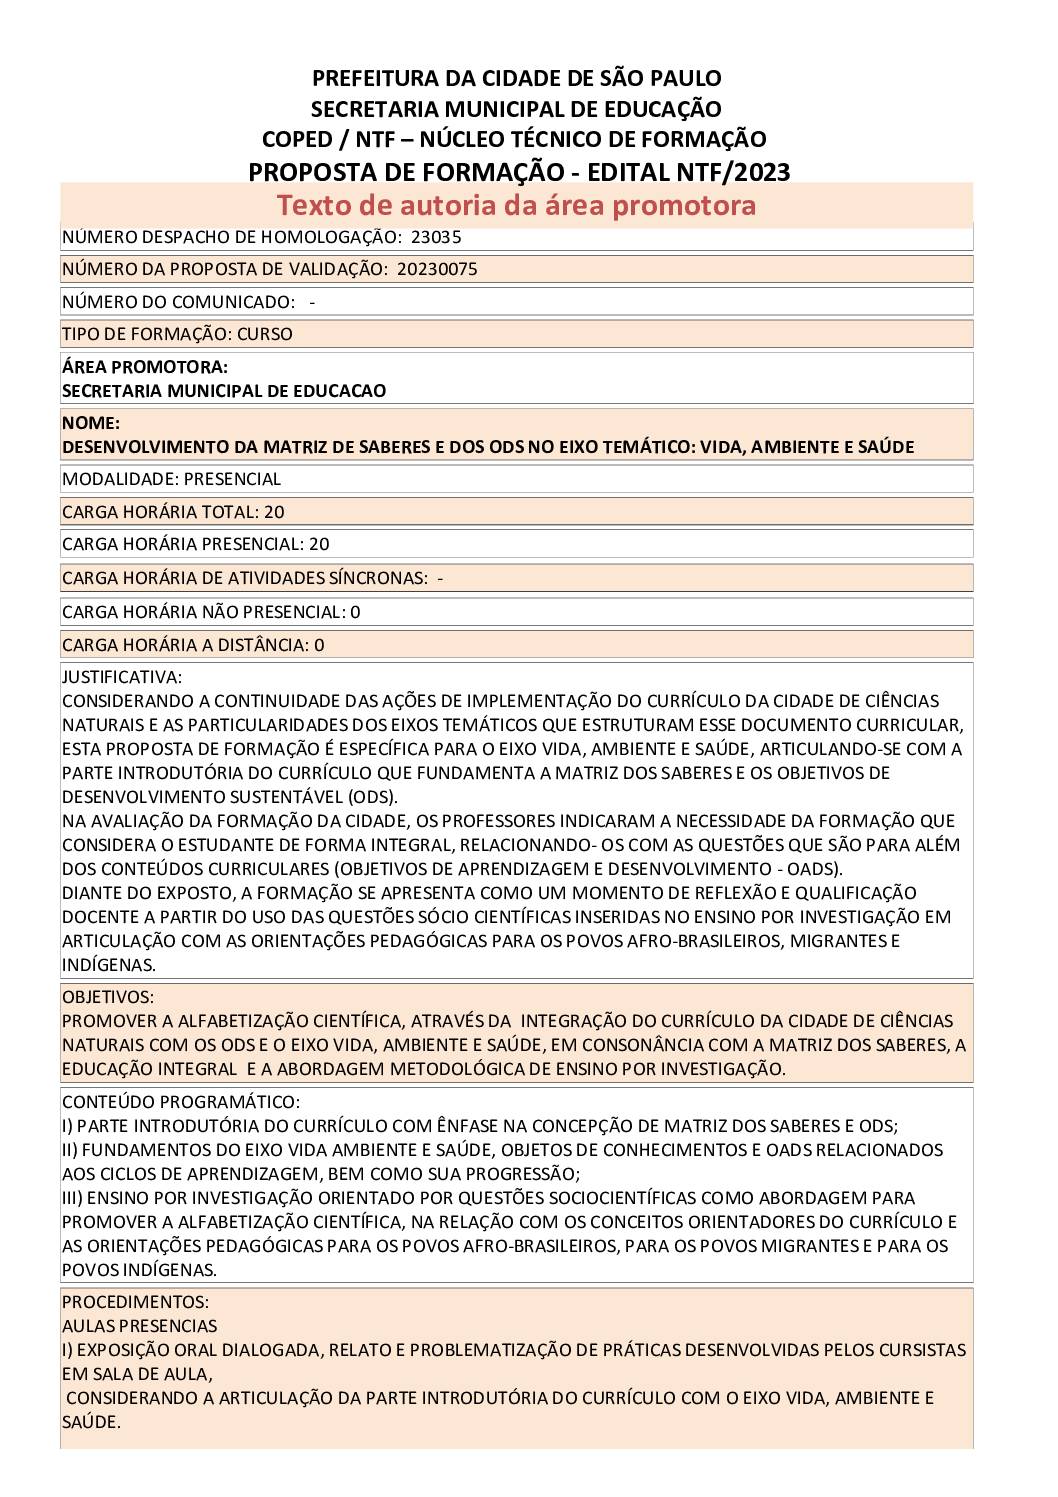 PDF com informações sobre o curso: DESENVOLVIMENTO DA MATRIZ DE SABERES E DOS ODS NO EIXO TEMÁTICO: VIDA, AMBIENTE E SAÚDE.